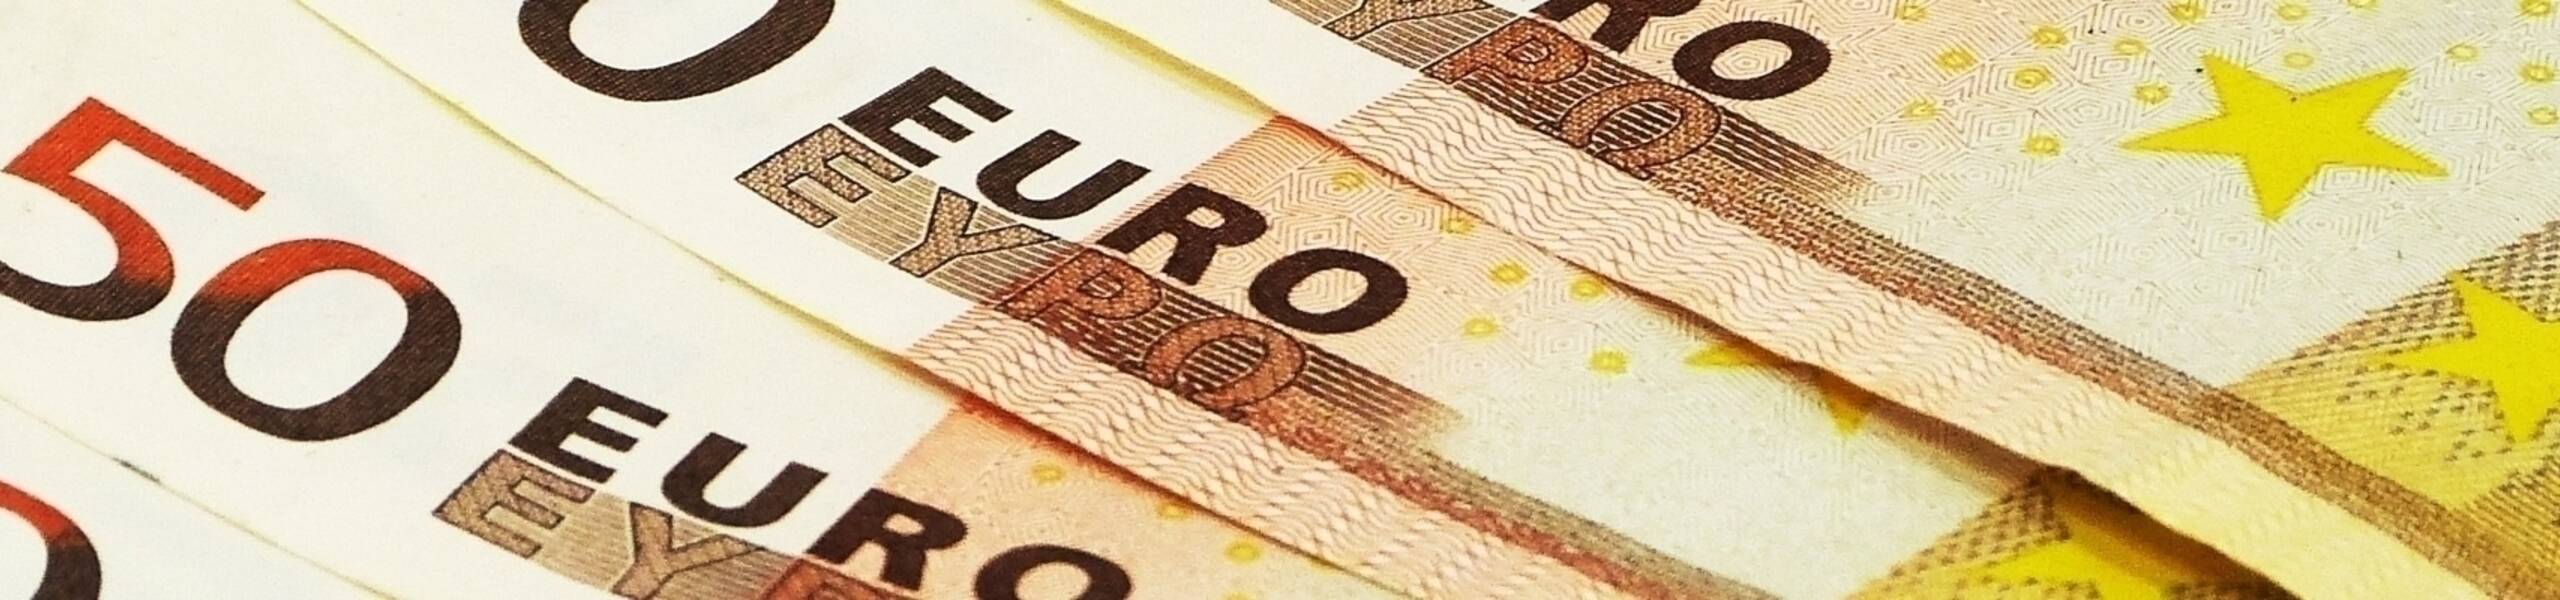 Zona do Euro: vendas no varejo aumento de 0,4% em maio